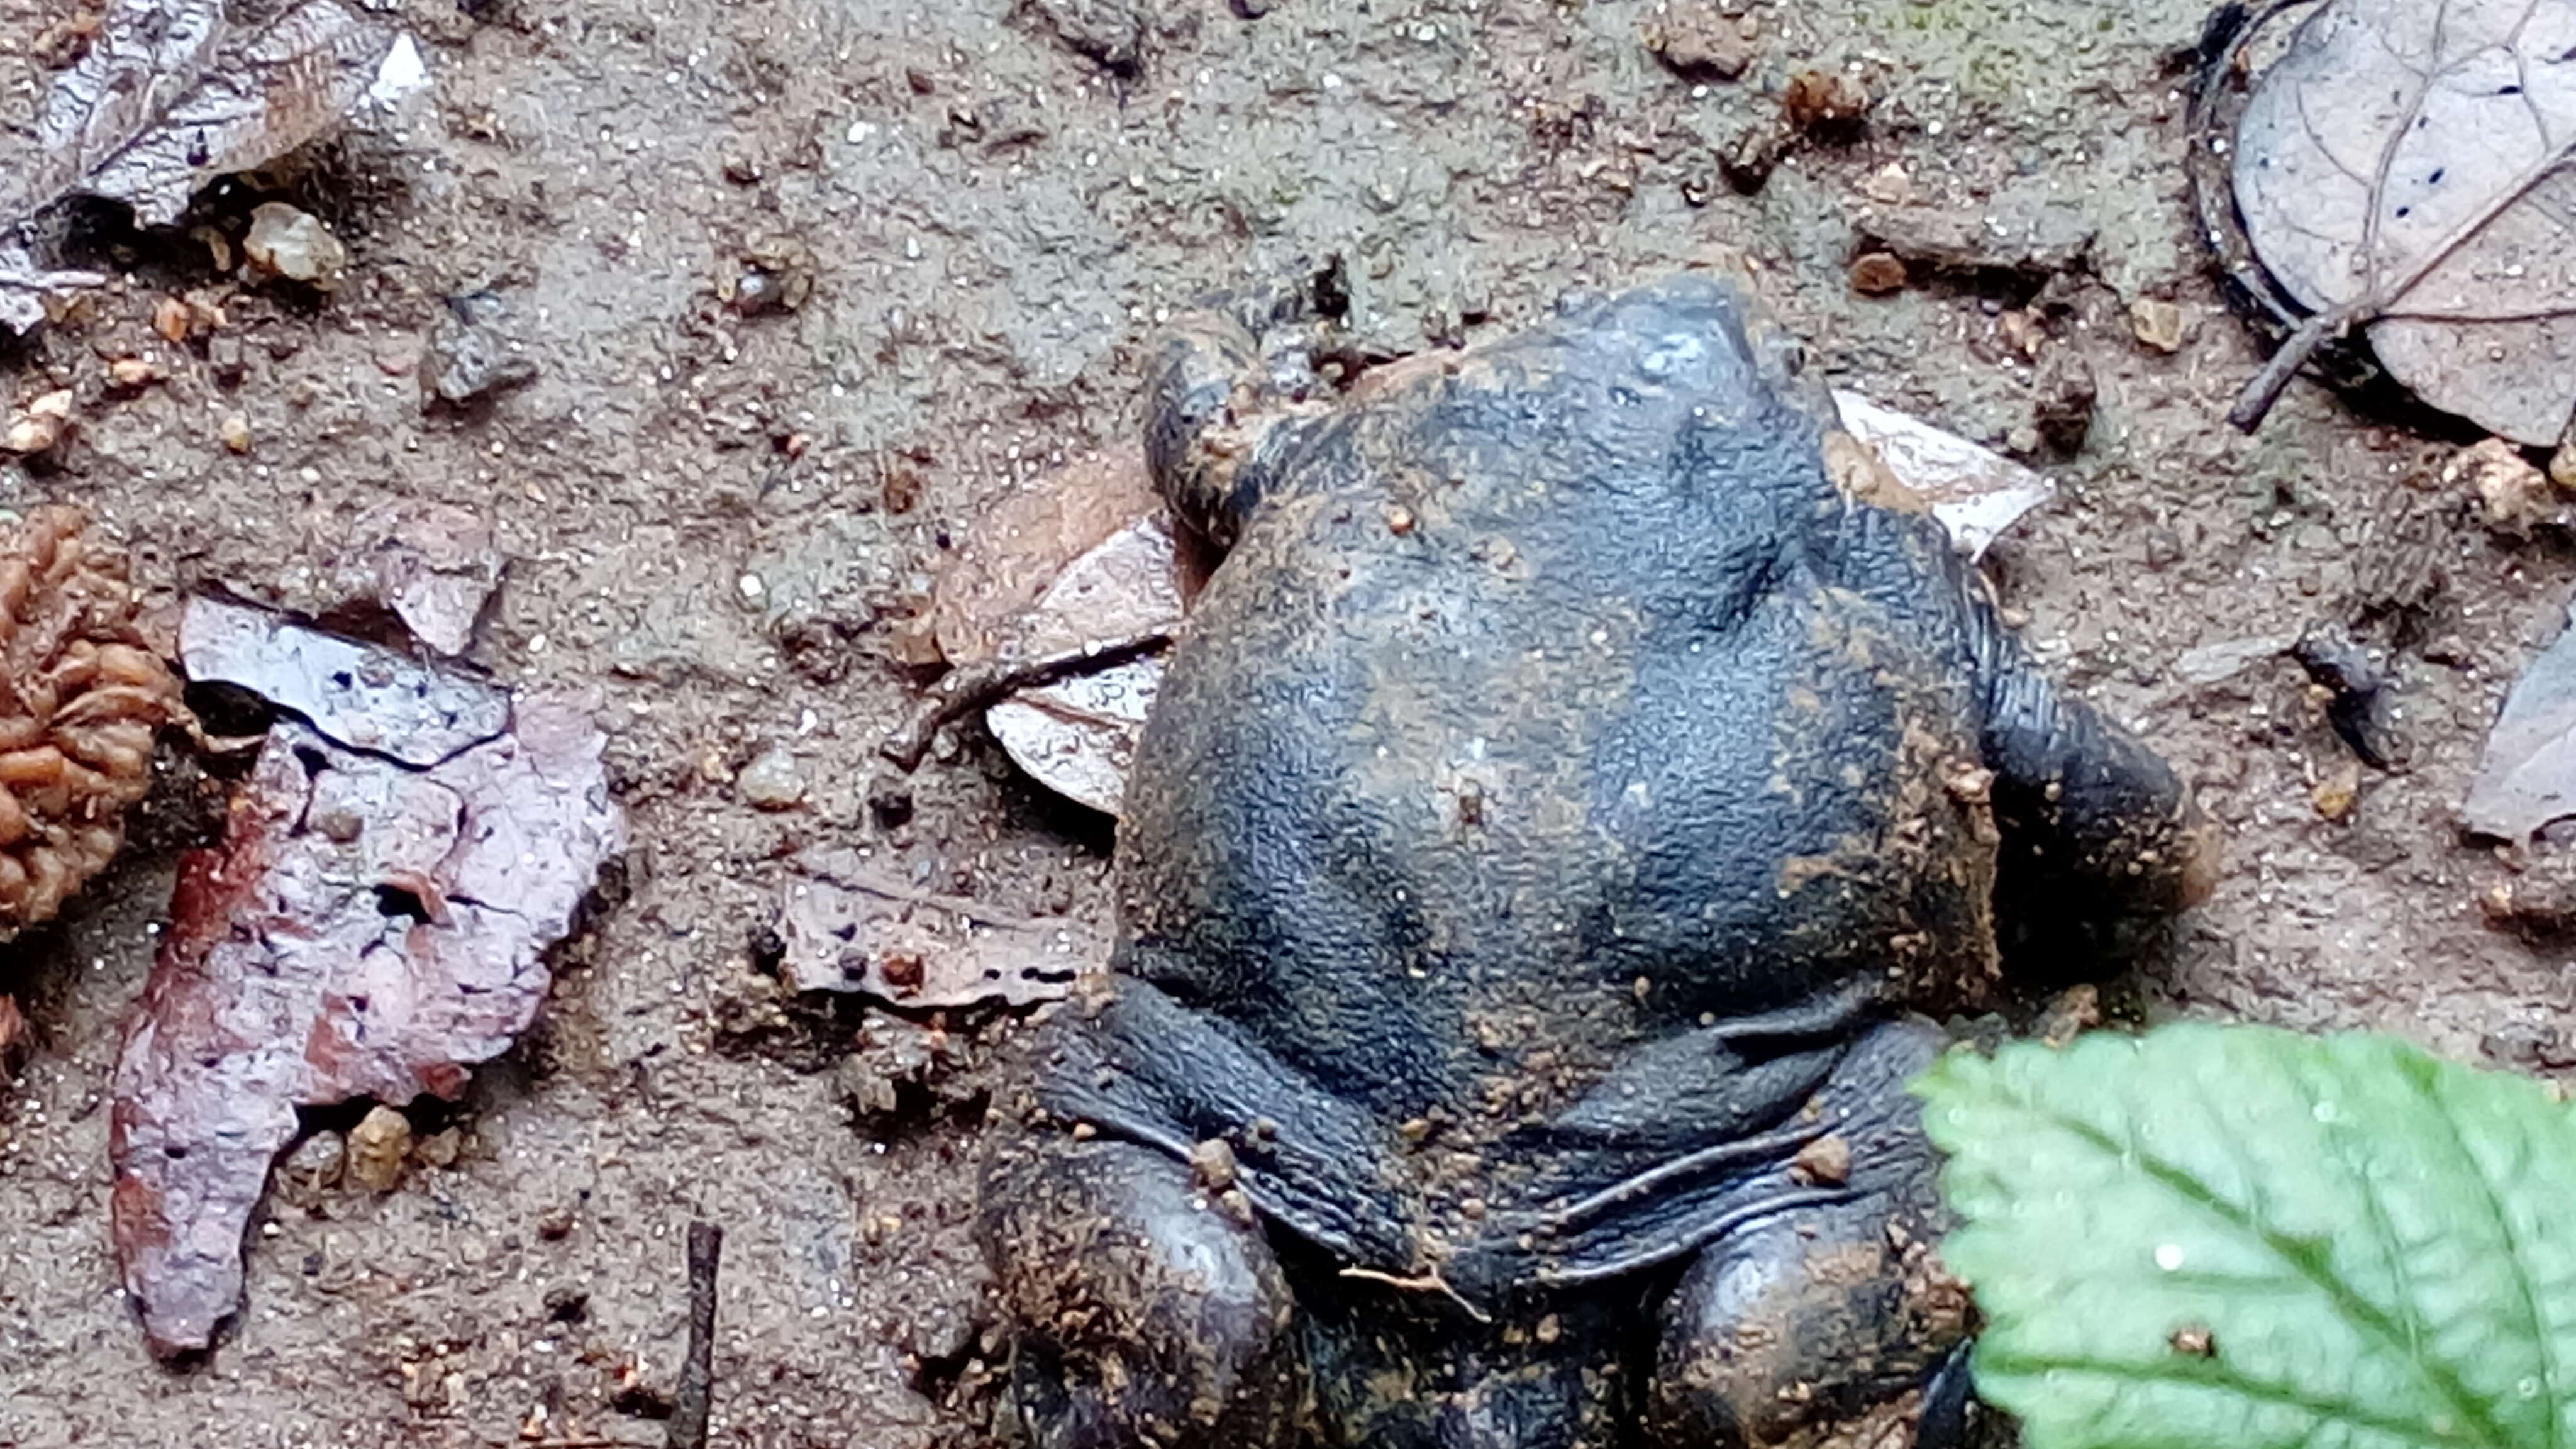 Image of Purple frog